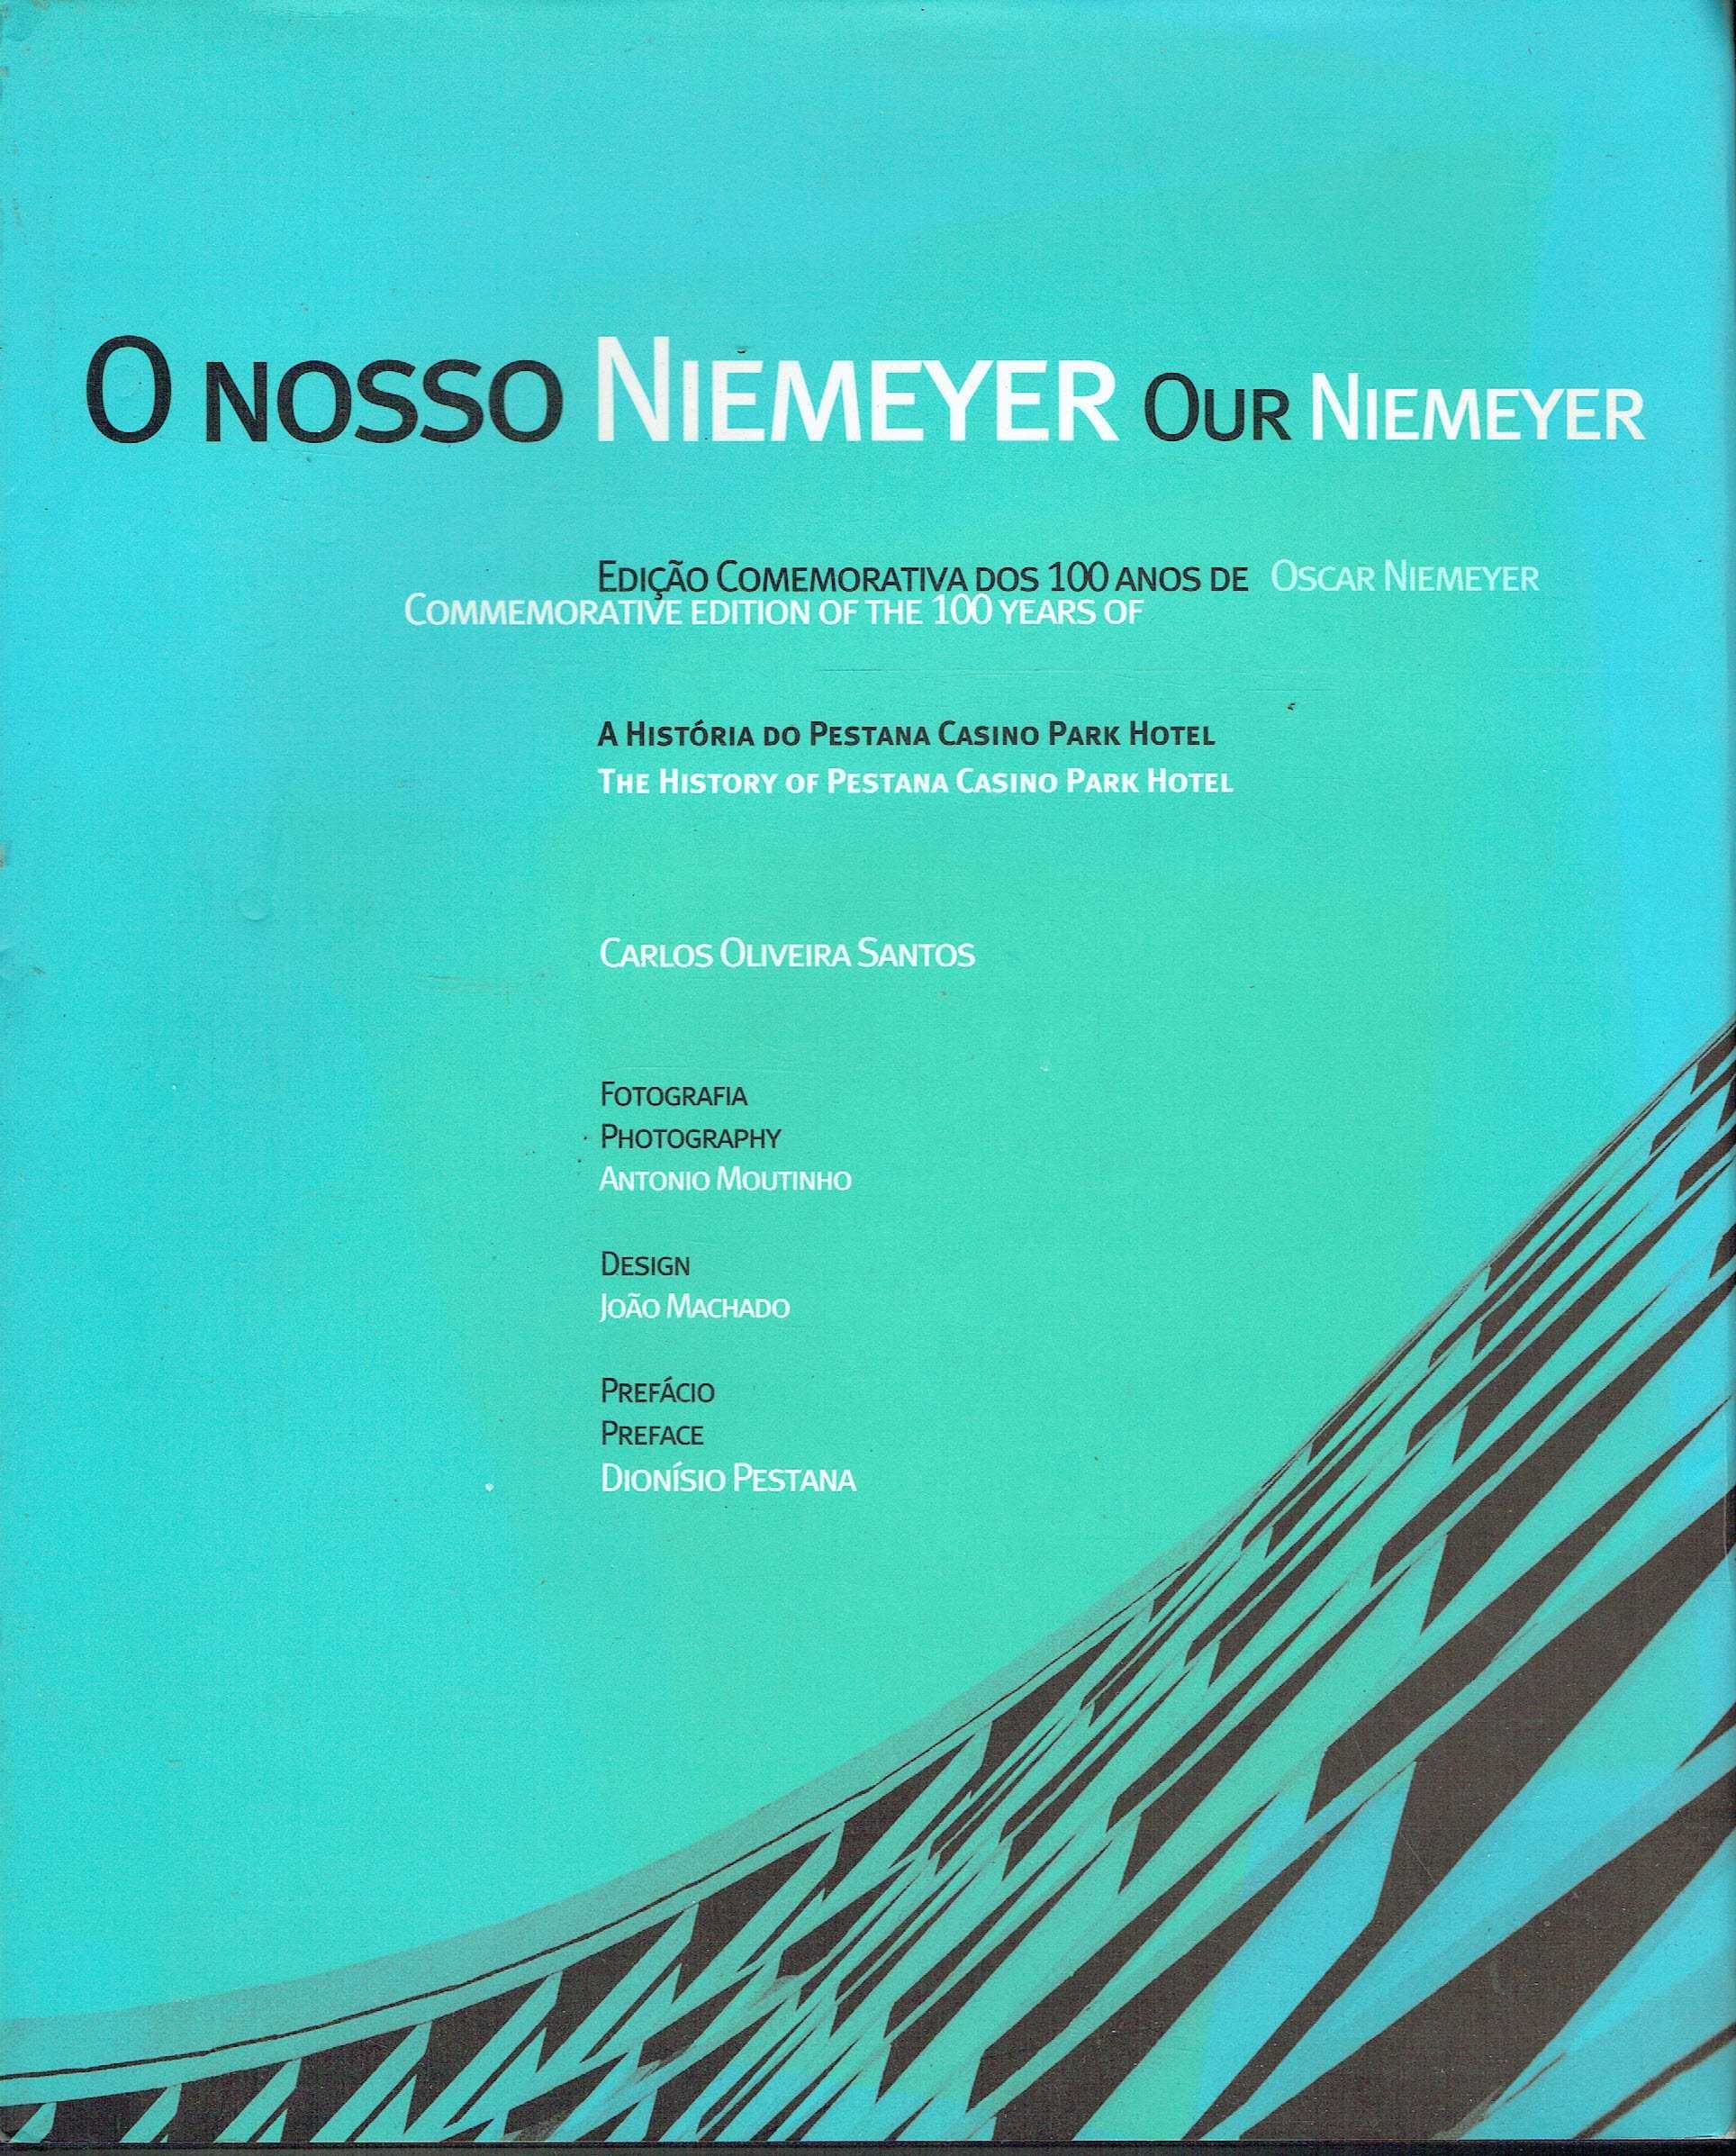 7441

O Nosso Niemeyer - Our Niemeyer
de Carlos Oliveira Santos